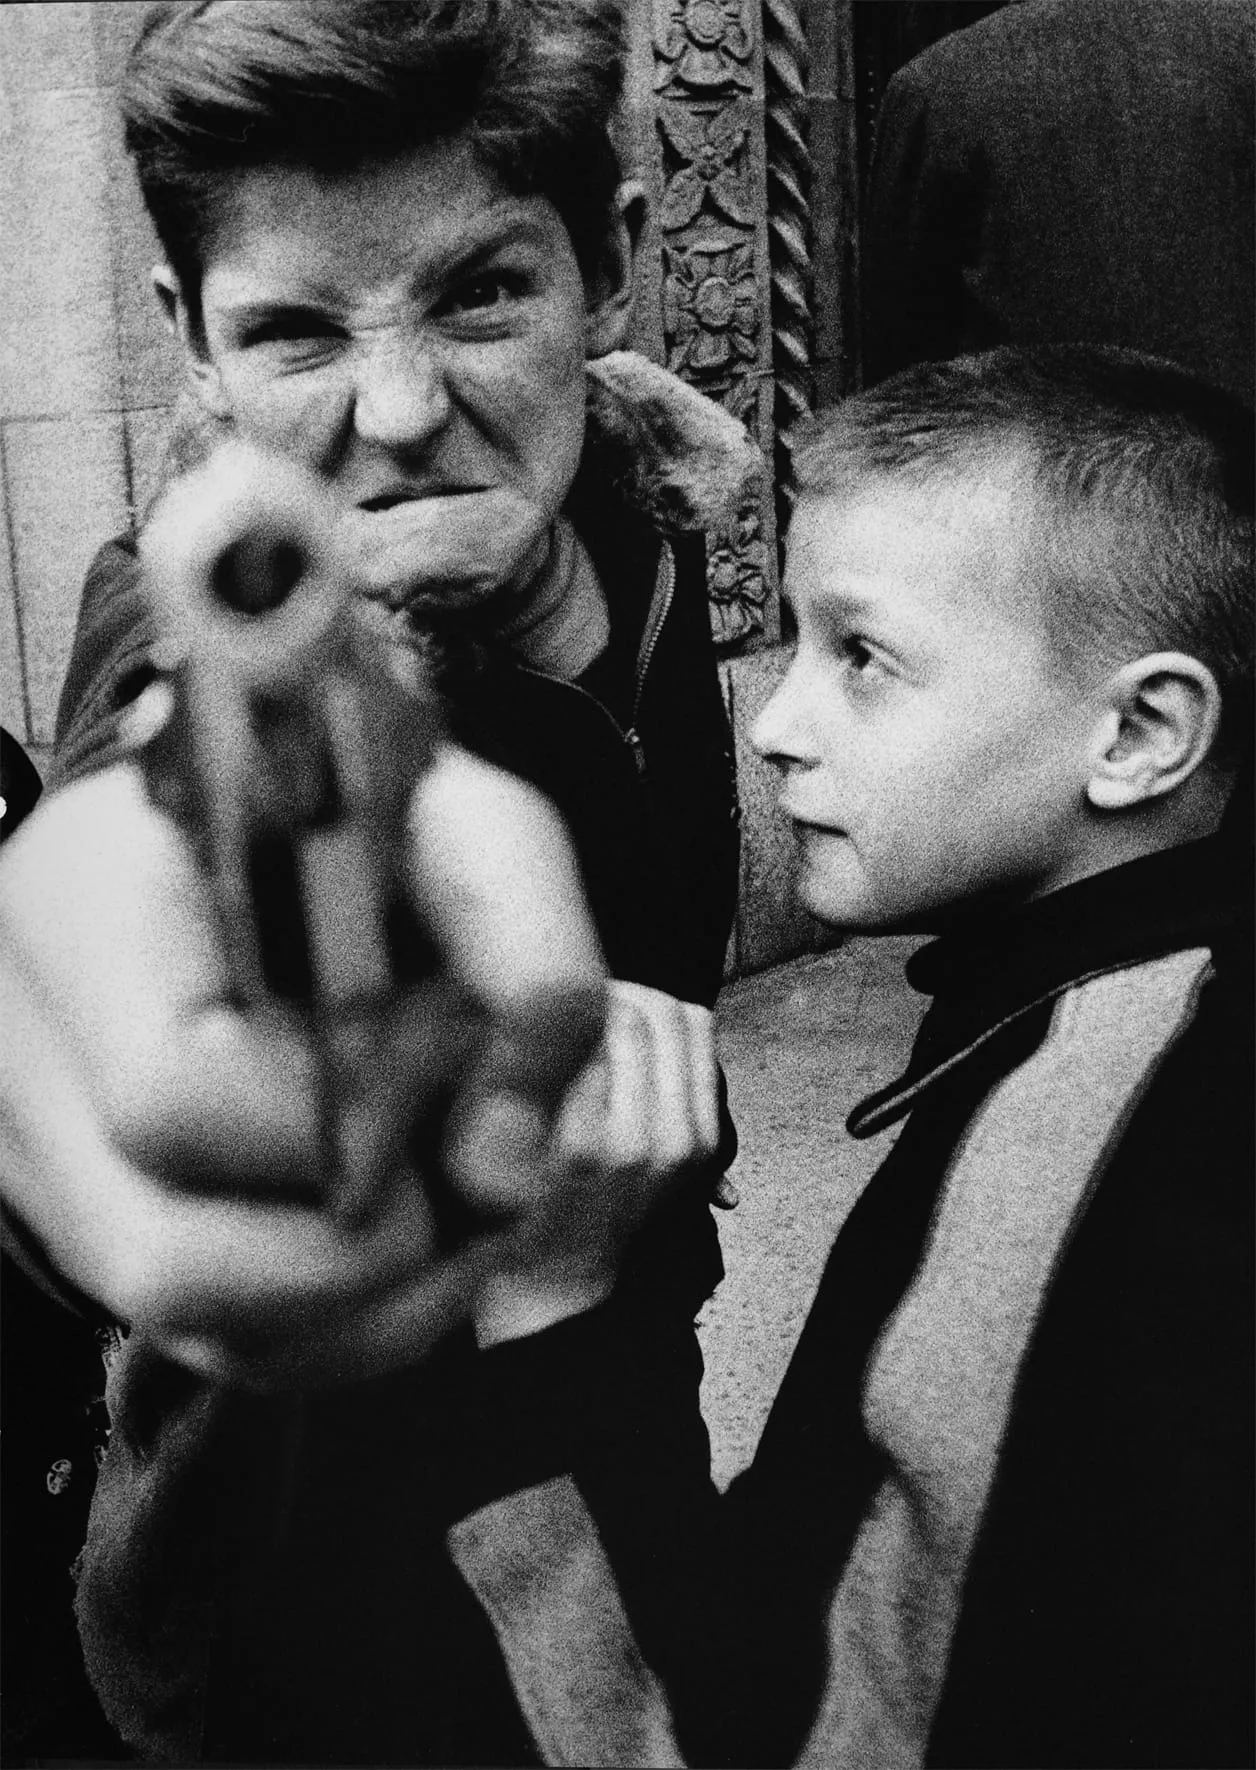 William Klein, Gun 1, New York, 1954.